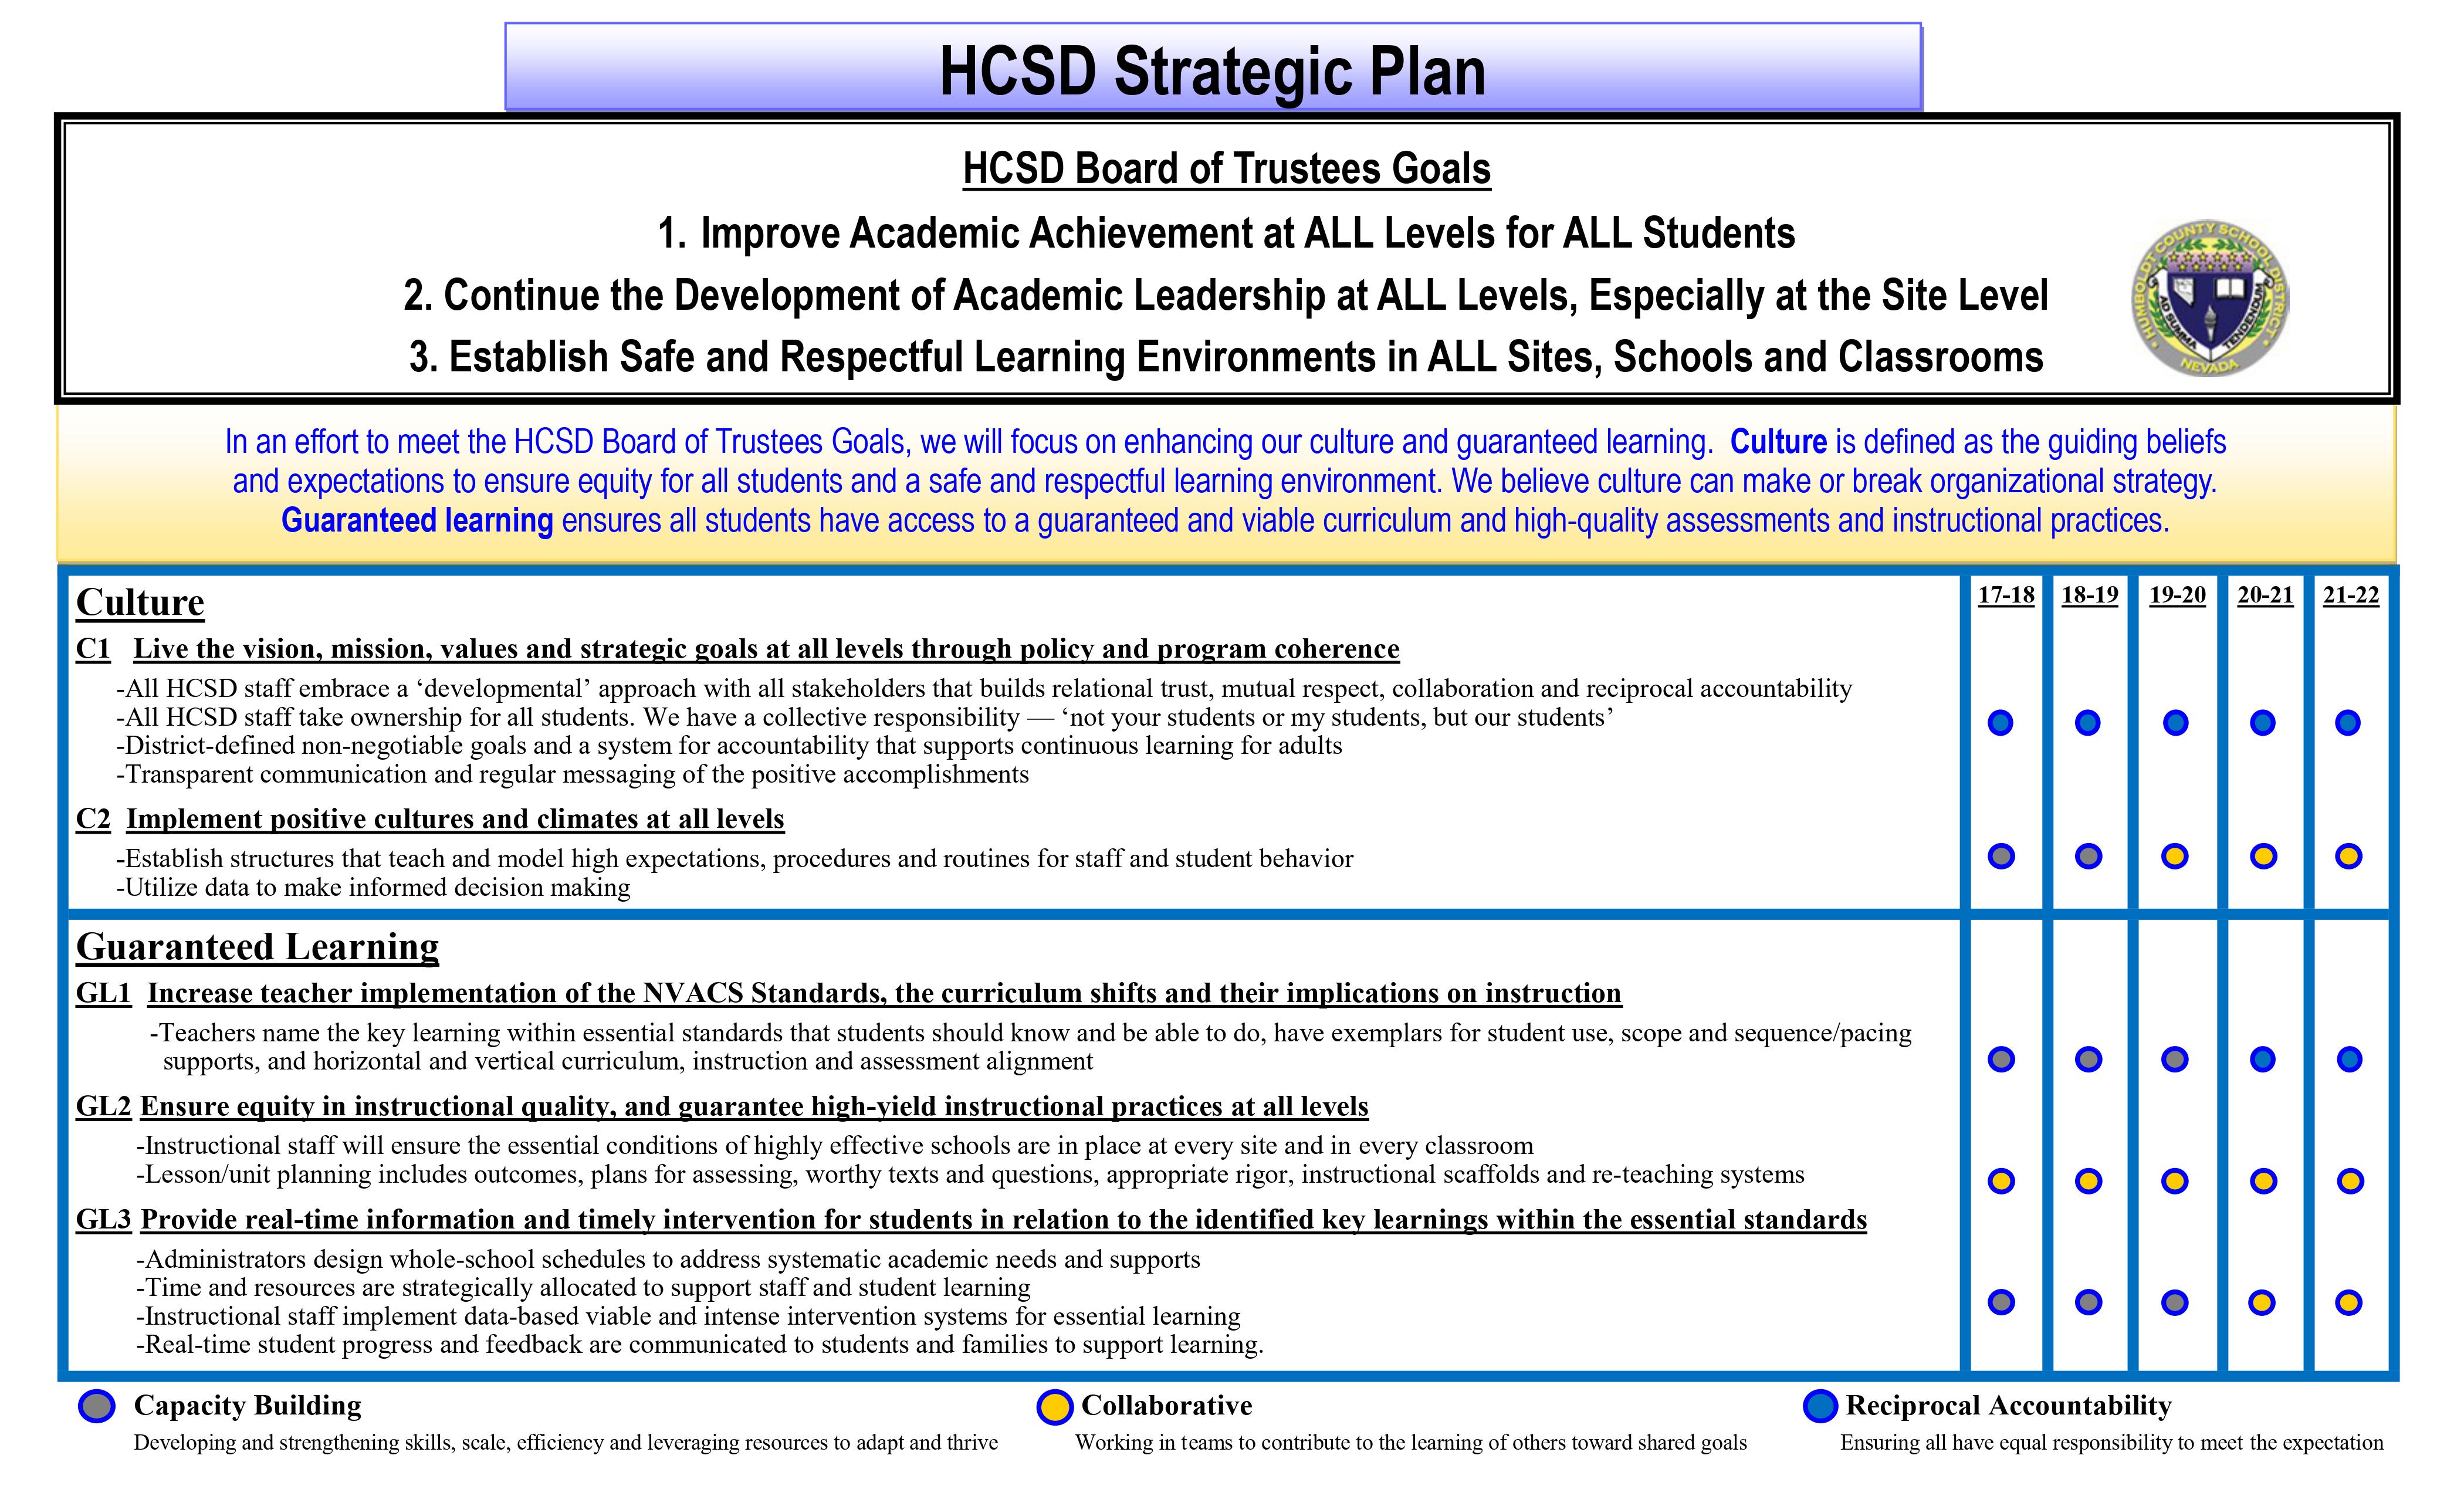 HCSD Board of Trustees Goals